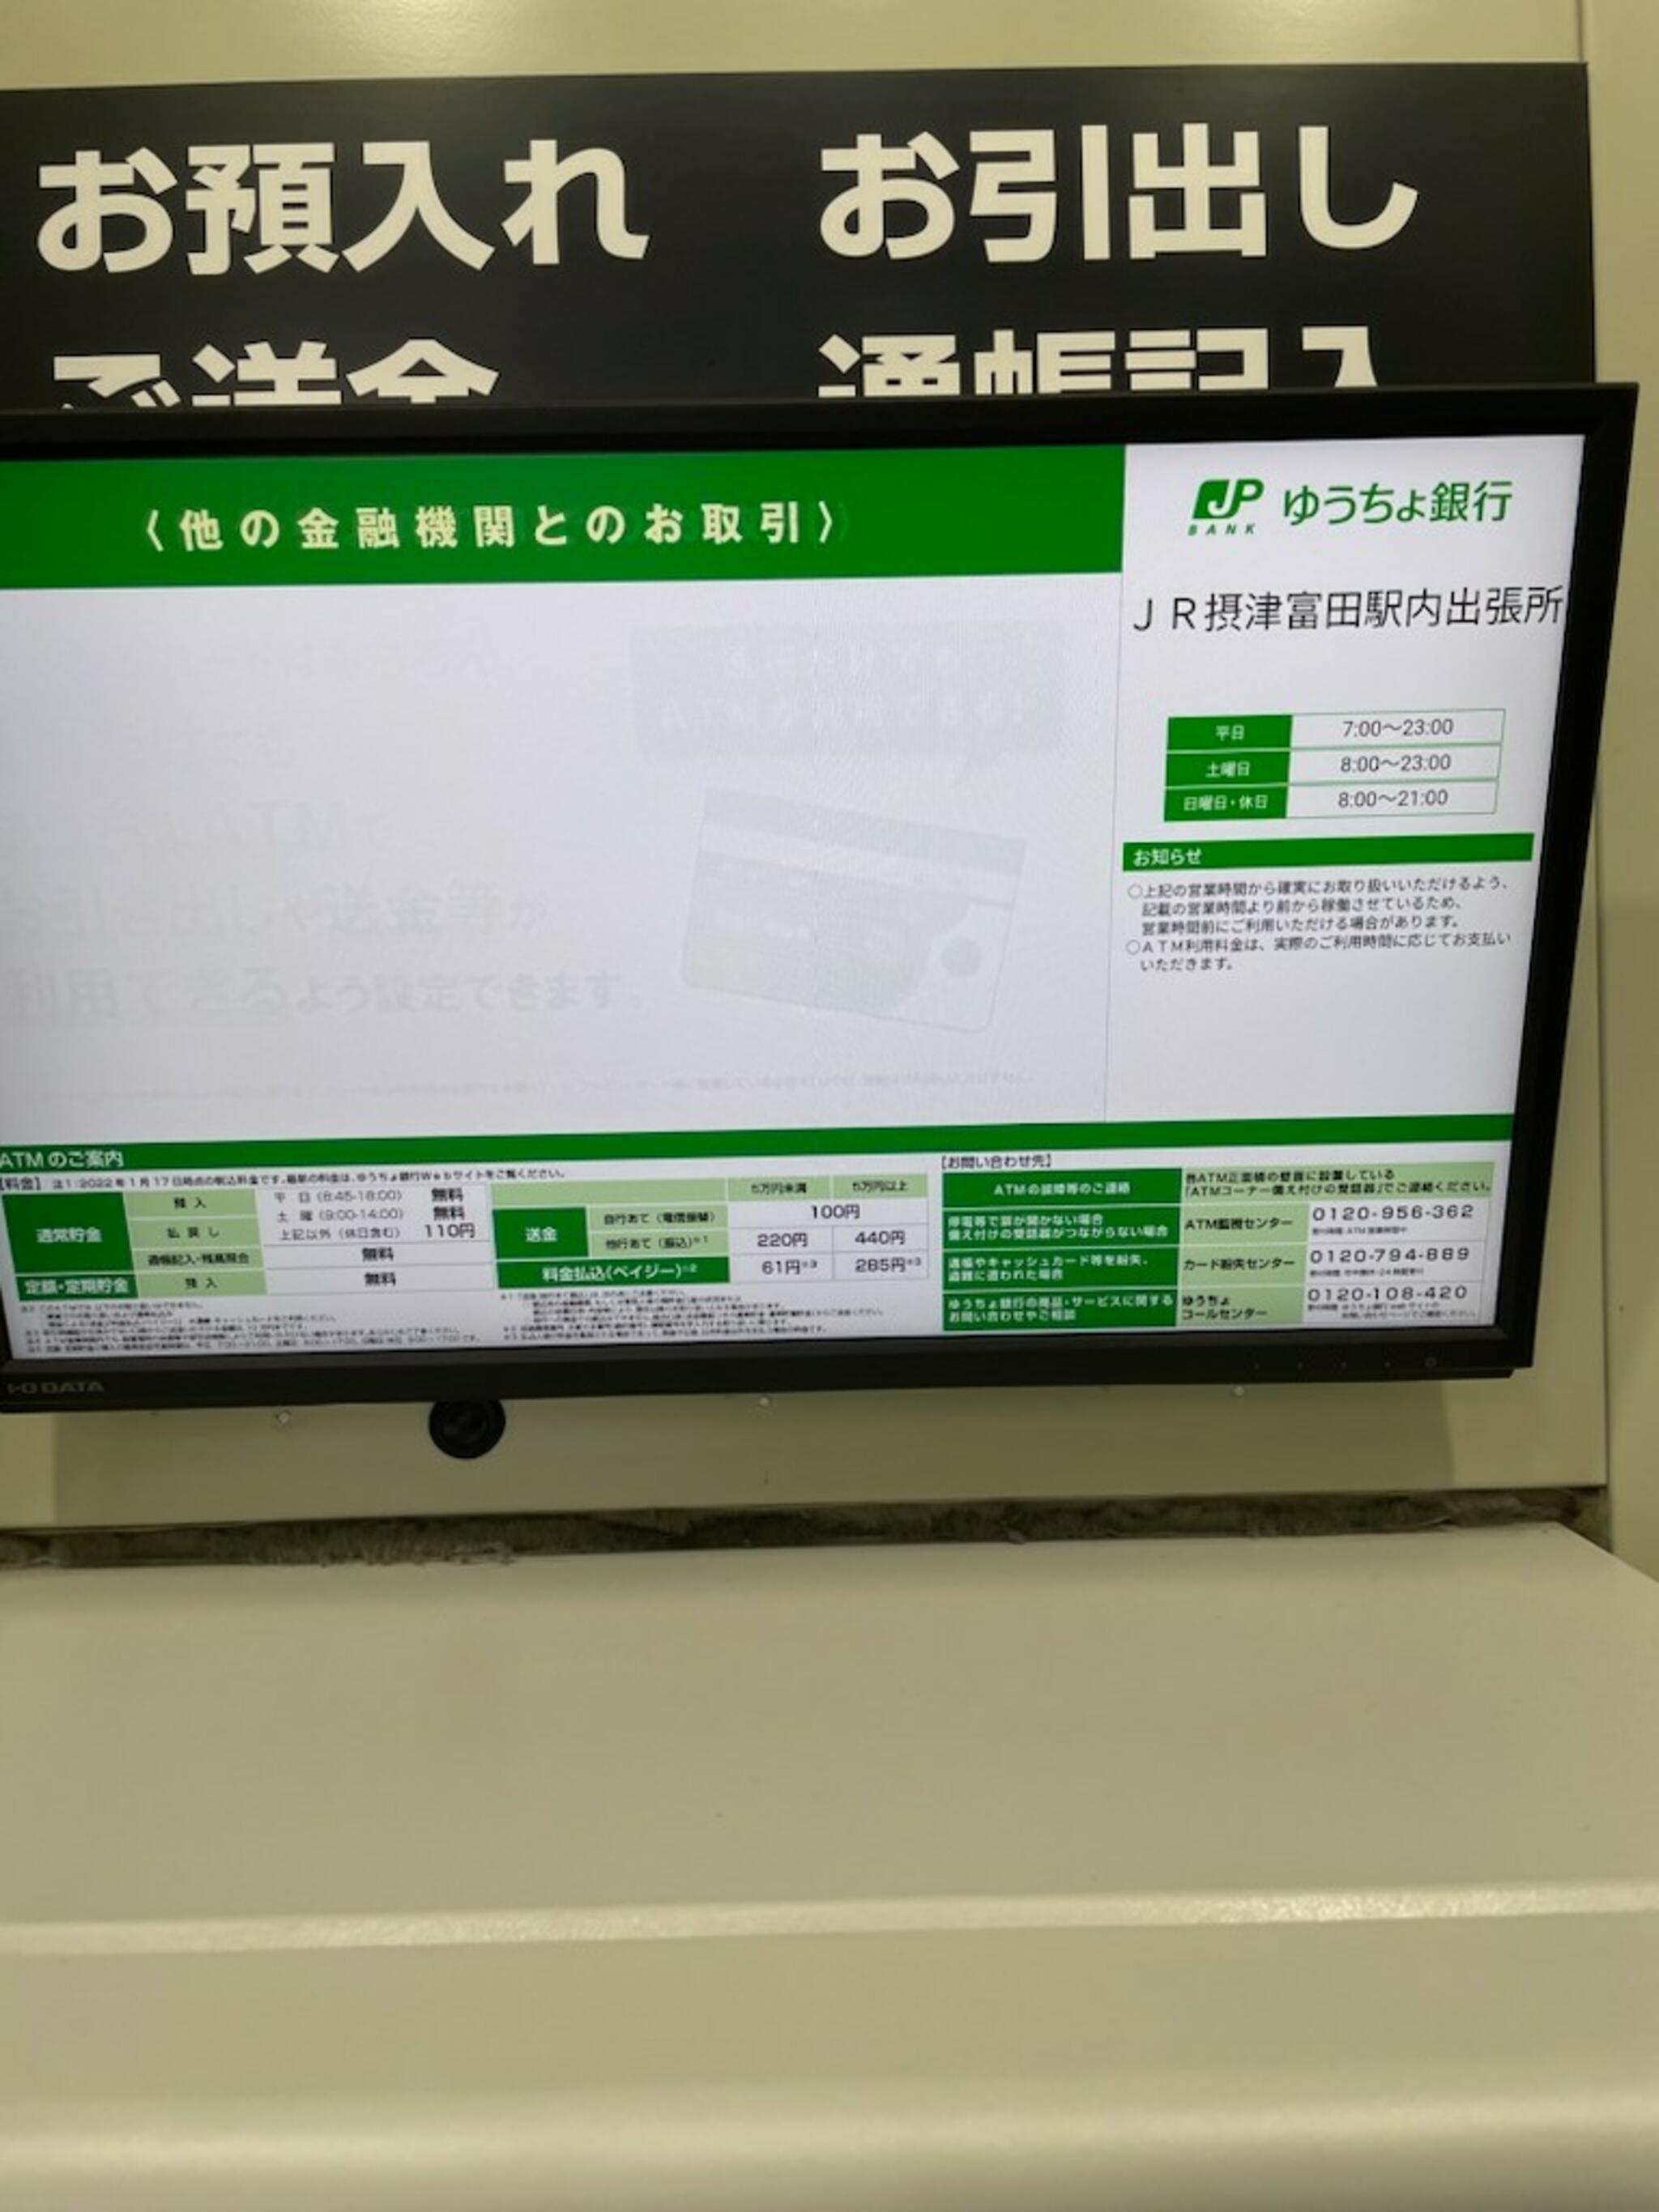 ゆうちょ銀行 ATM JR摂津富田駅内出張所の代表写真8